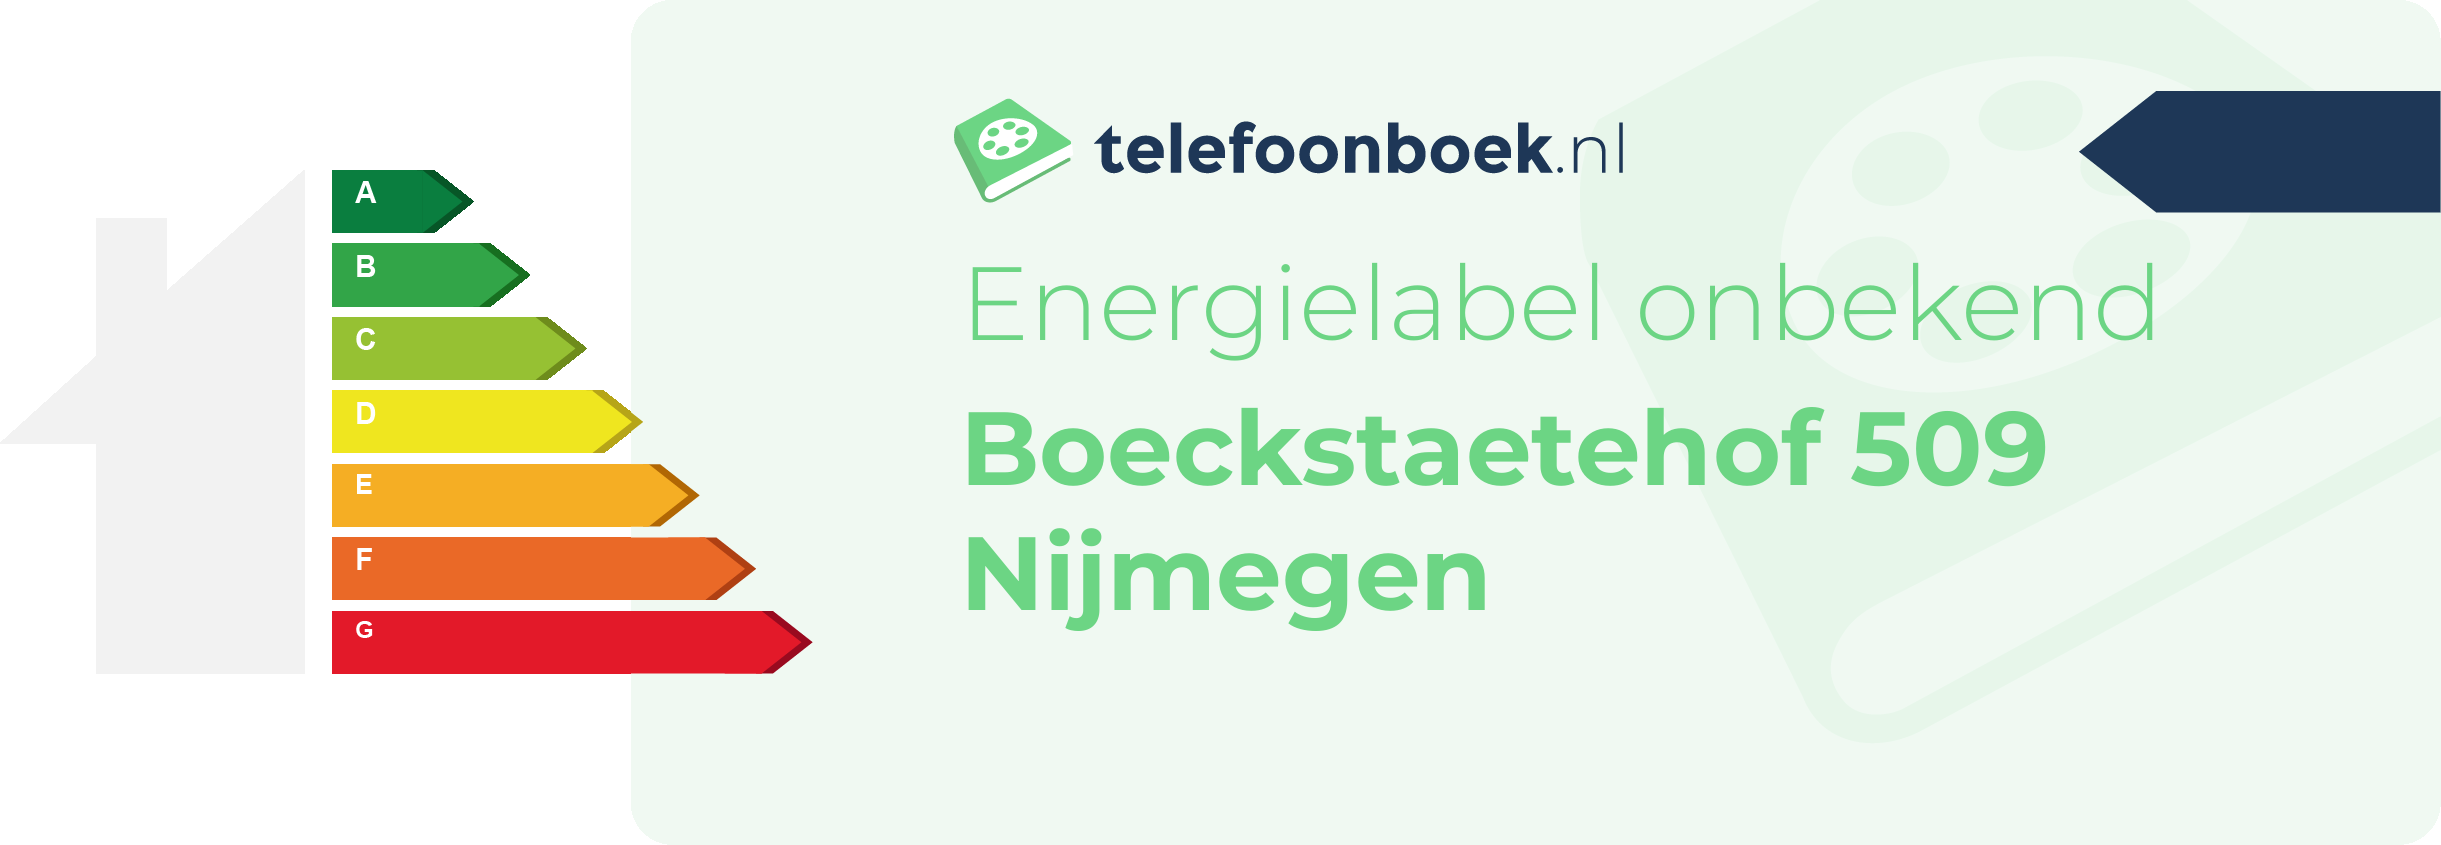 Energielabel Boeckstaetehof 509 Nijmegen